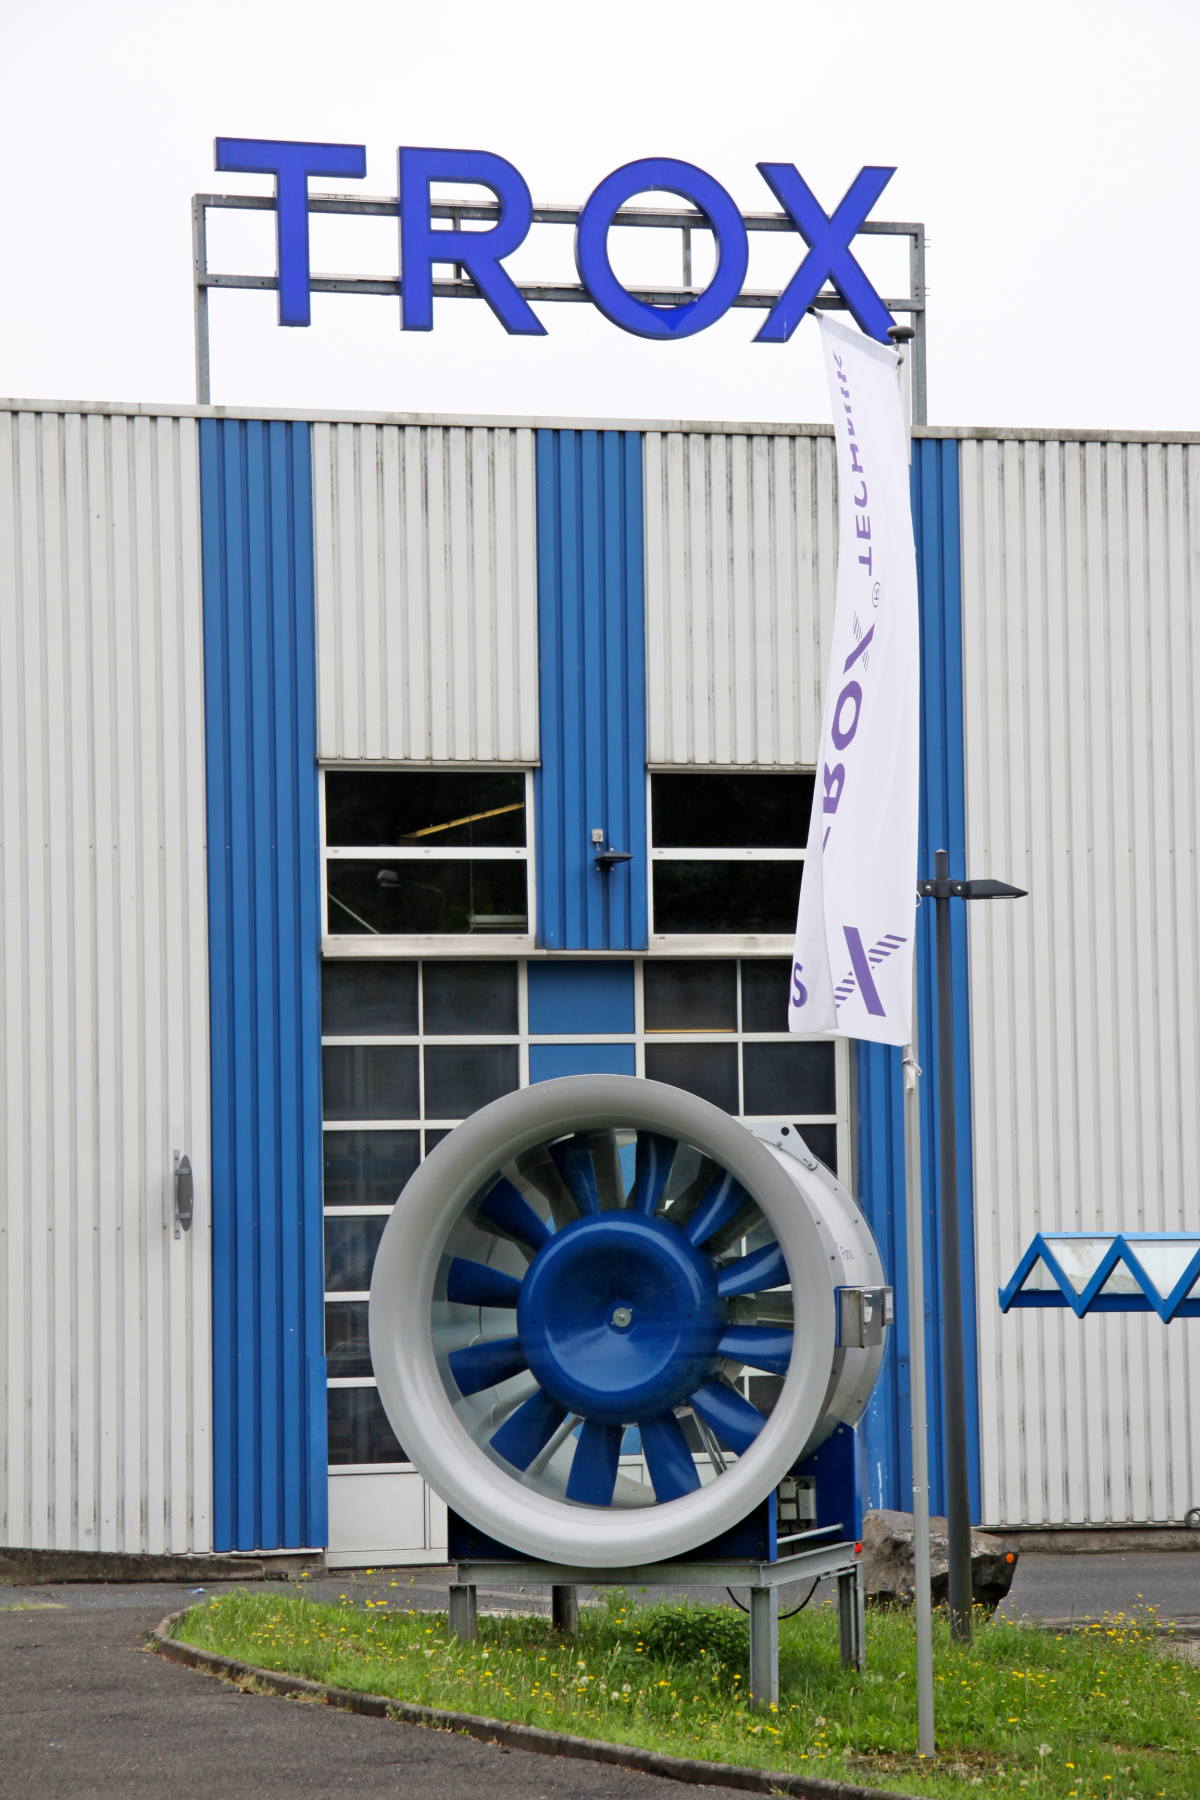 Die Trox X-FANS GmbH mit Hauptsitz in Bad Hersfeld entwickelt, produziert und vermarktet Lüftungs- und Entrauchungsventilatoren sowie Wärmerückgewinnungsgeräte für die technische Gebäudeausrüstung. 